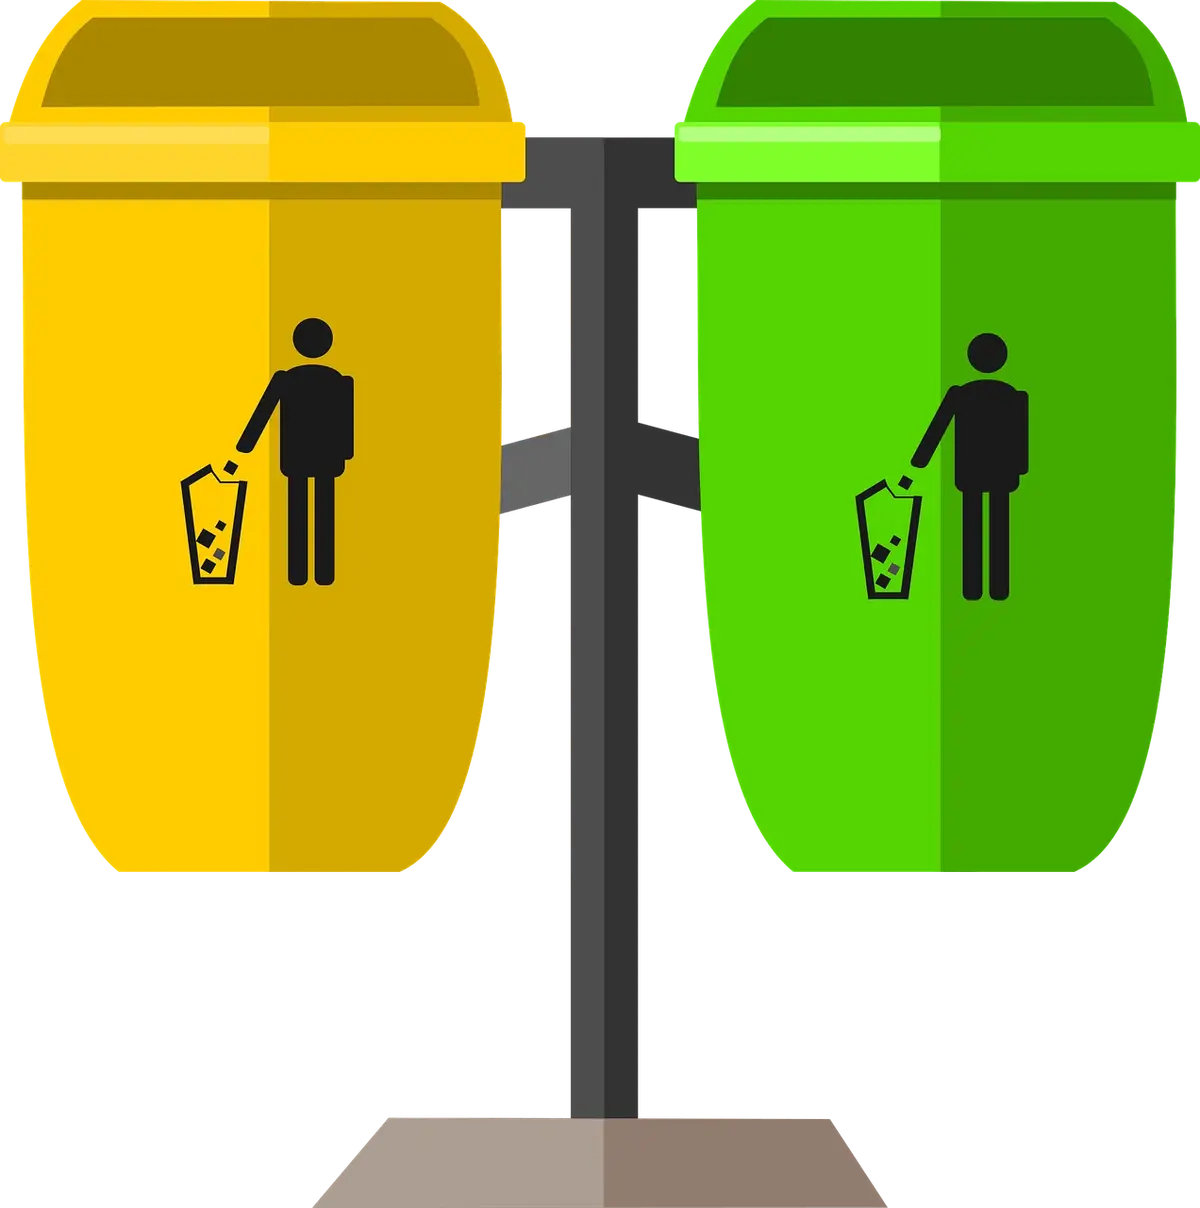 Kilka ważnych faktów o koszach na śmieci